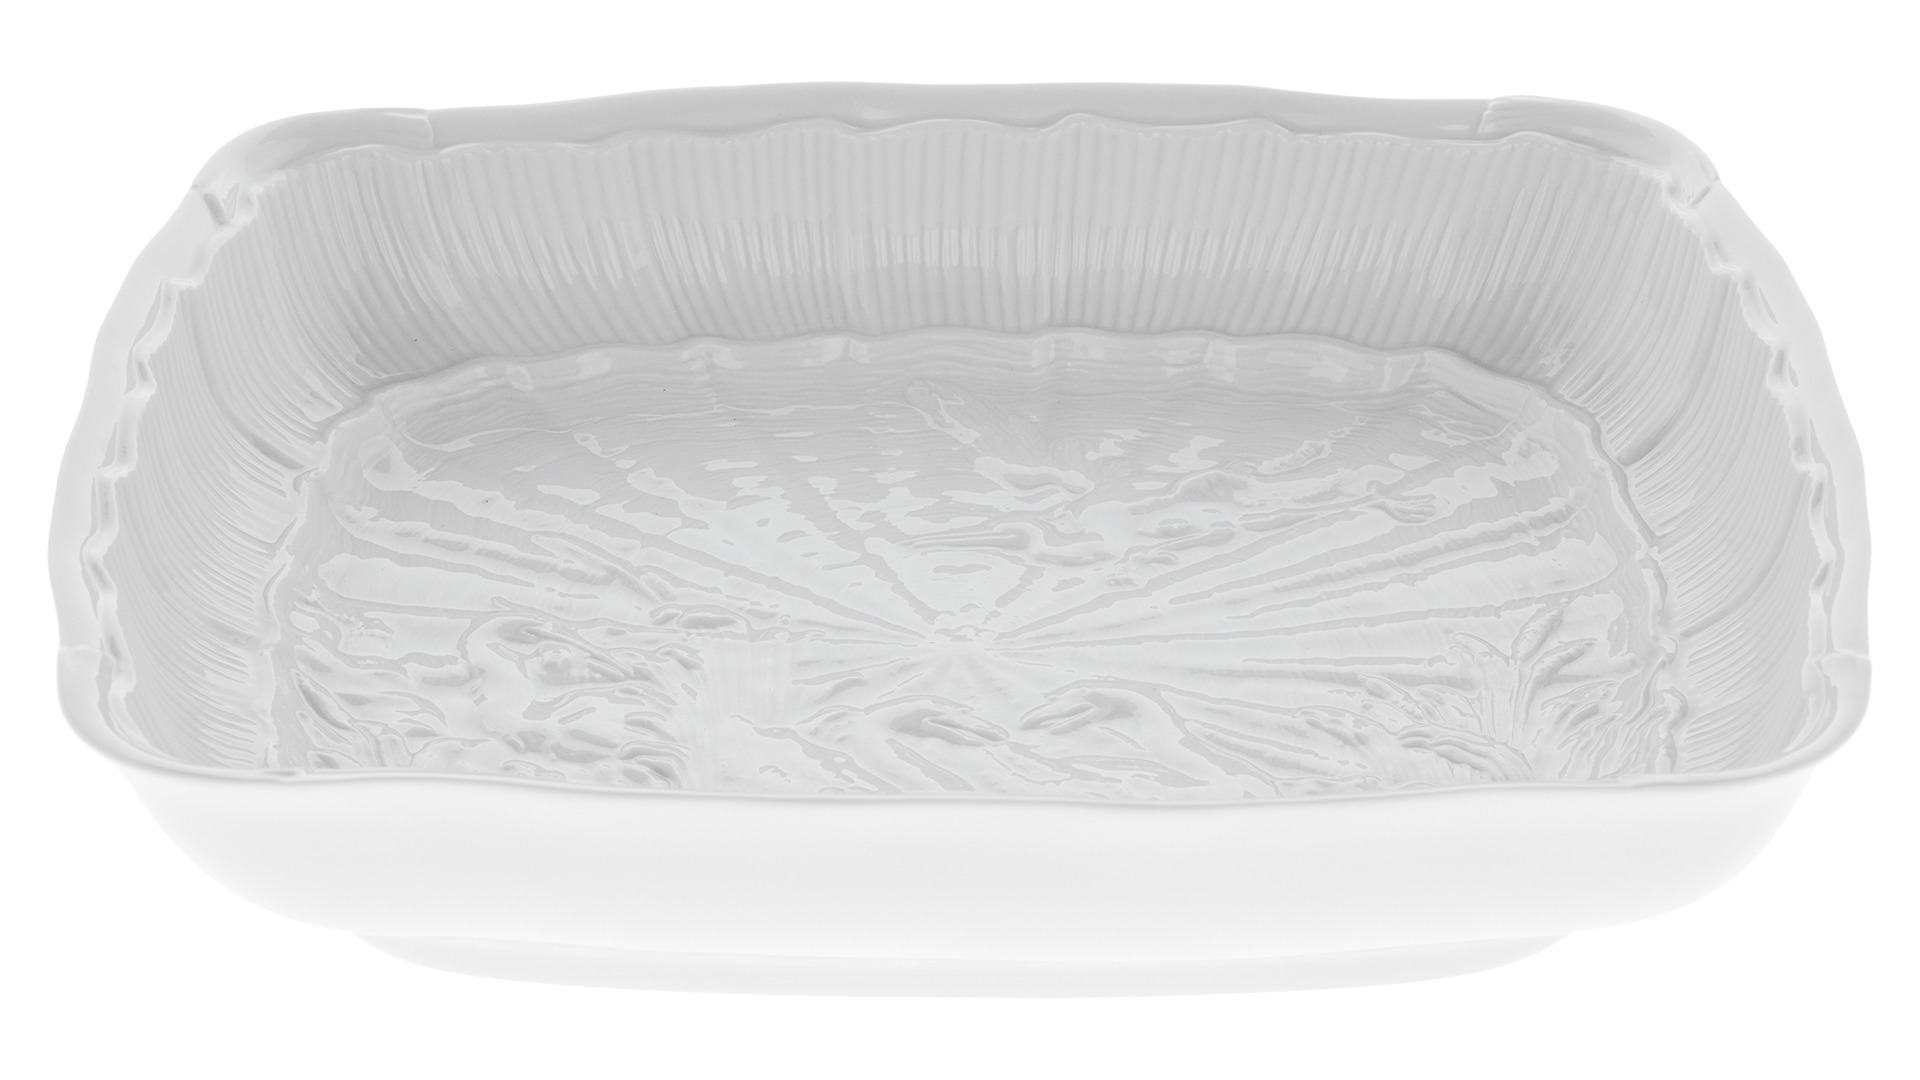 Блюдо прямоугольное Meissen Лебединый сервиз 26,5 см, белый рельеф